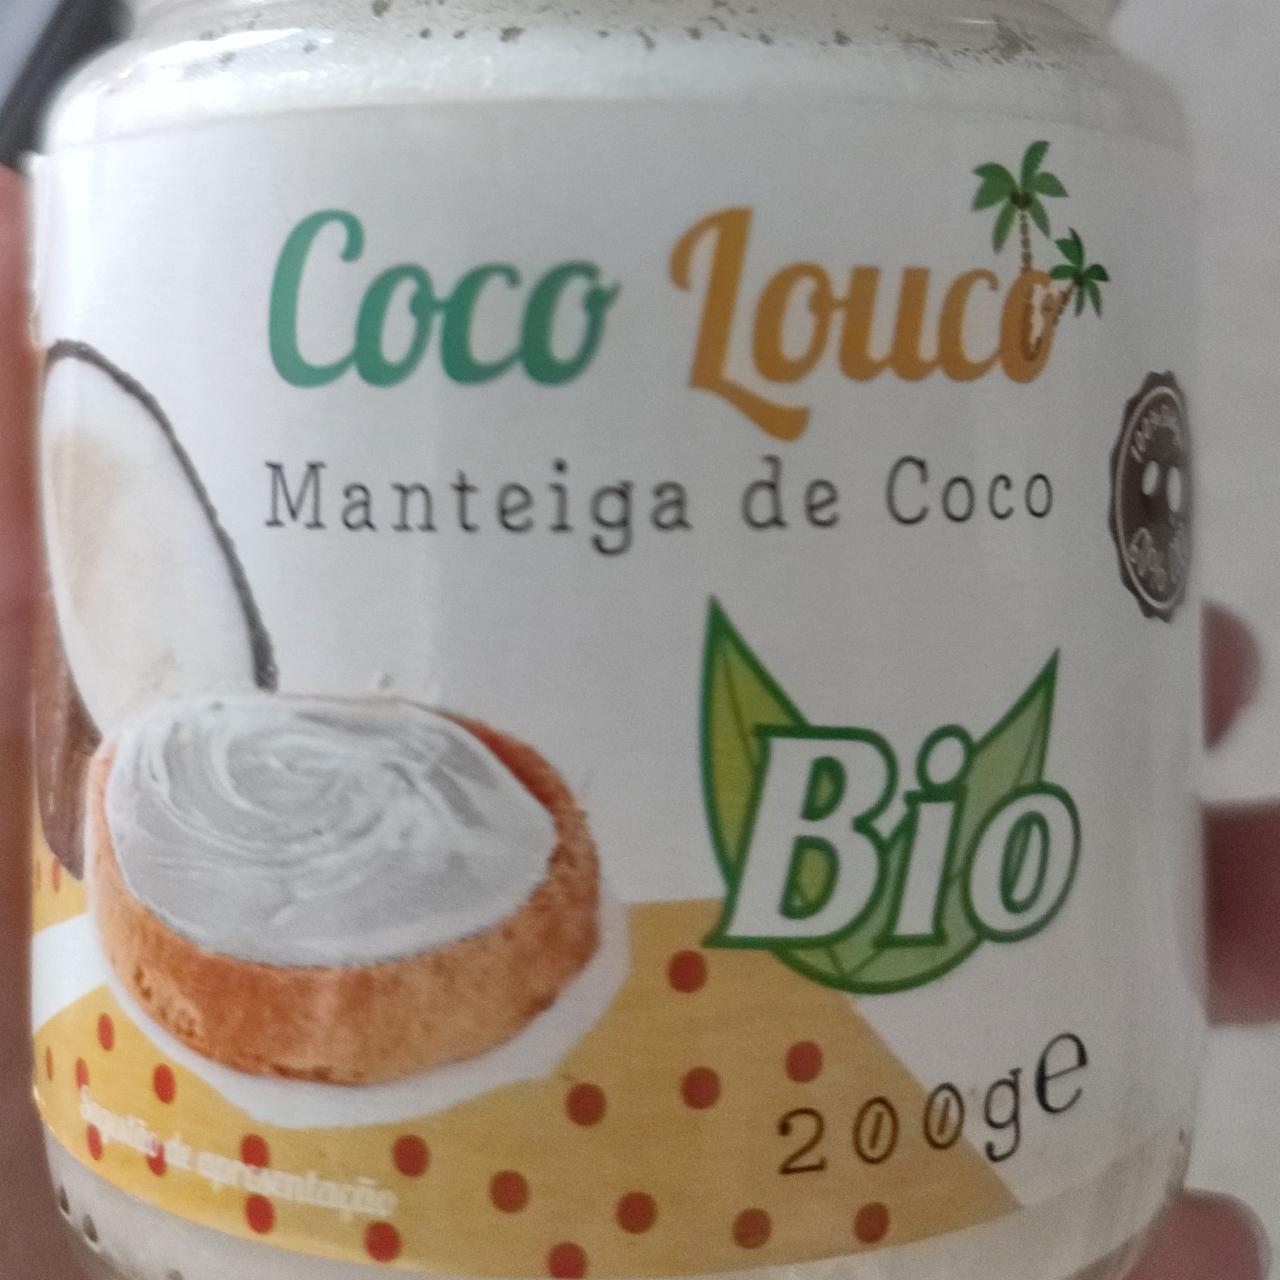 Фото - кокосовое масло Coco Louco